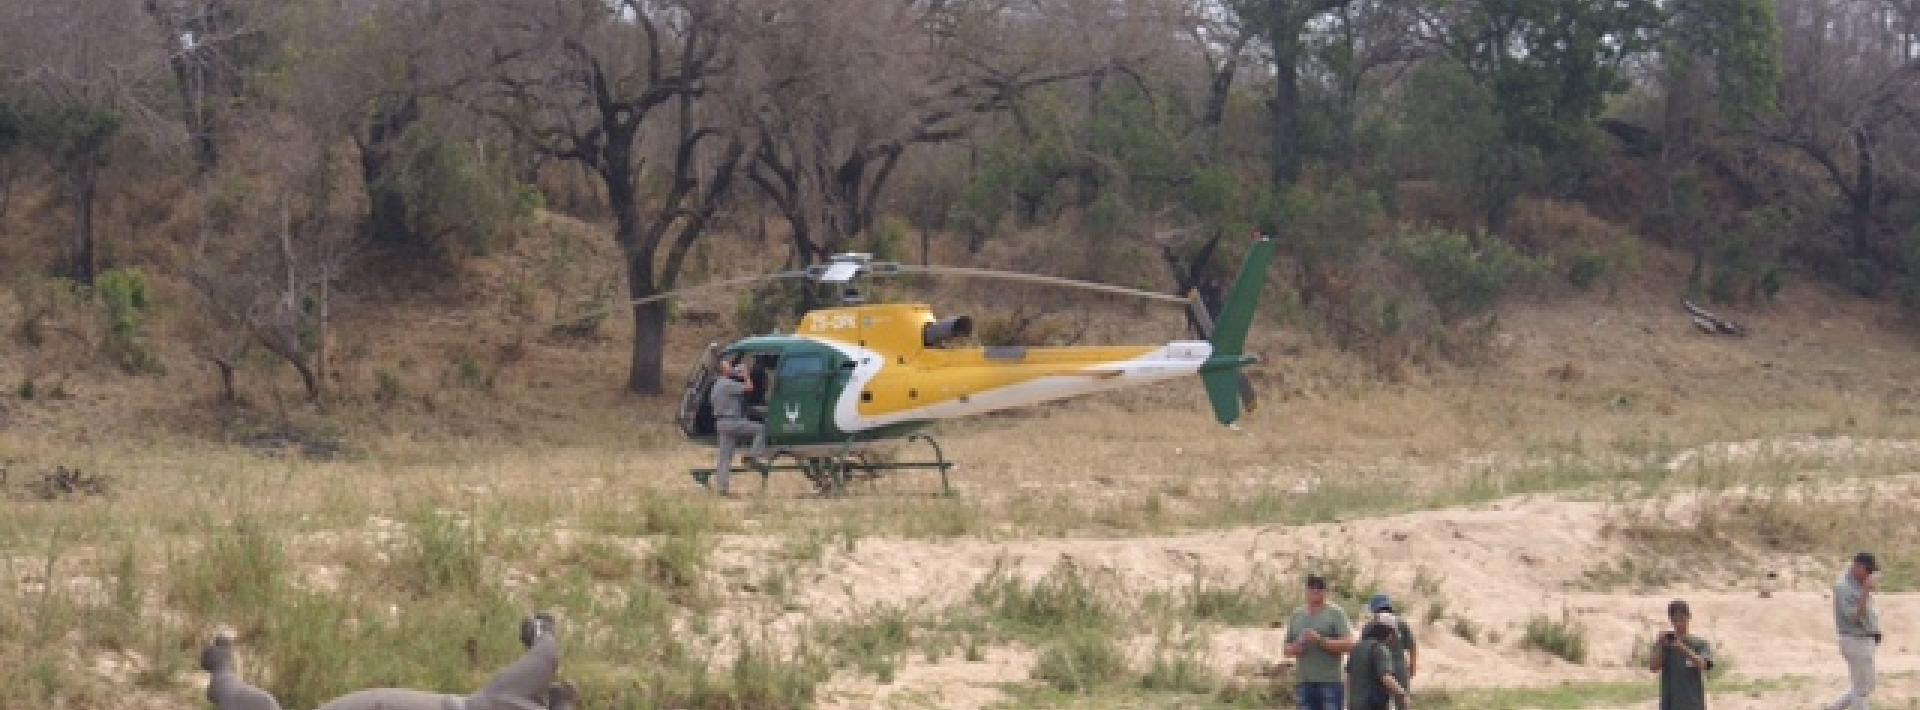 Poaching syndicates target Kruger rangers